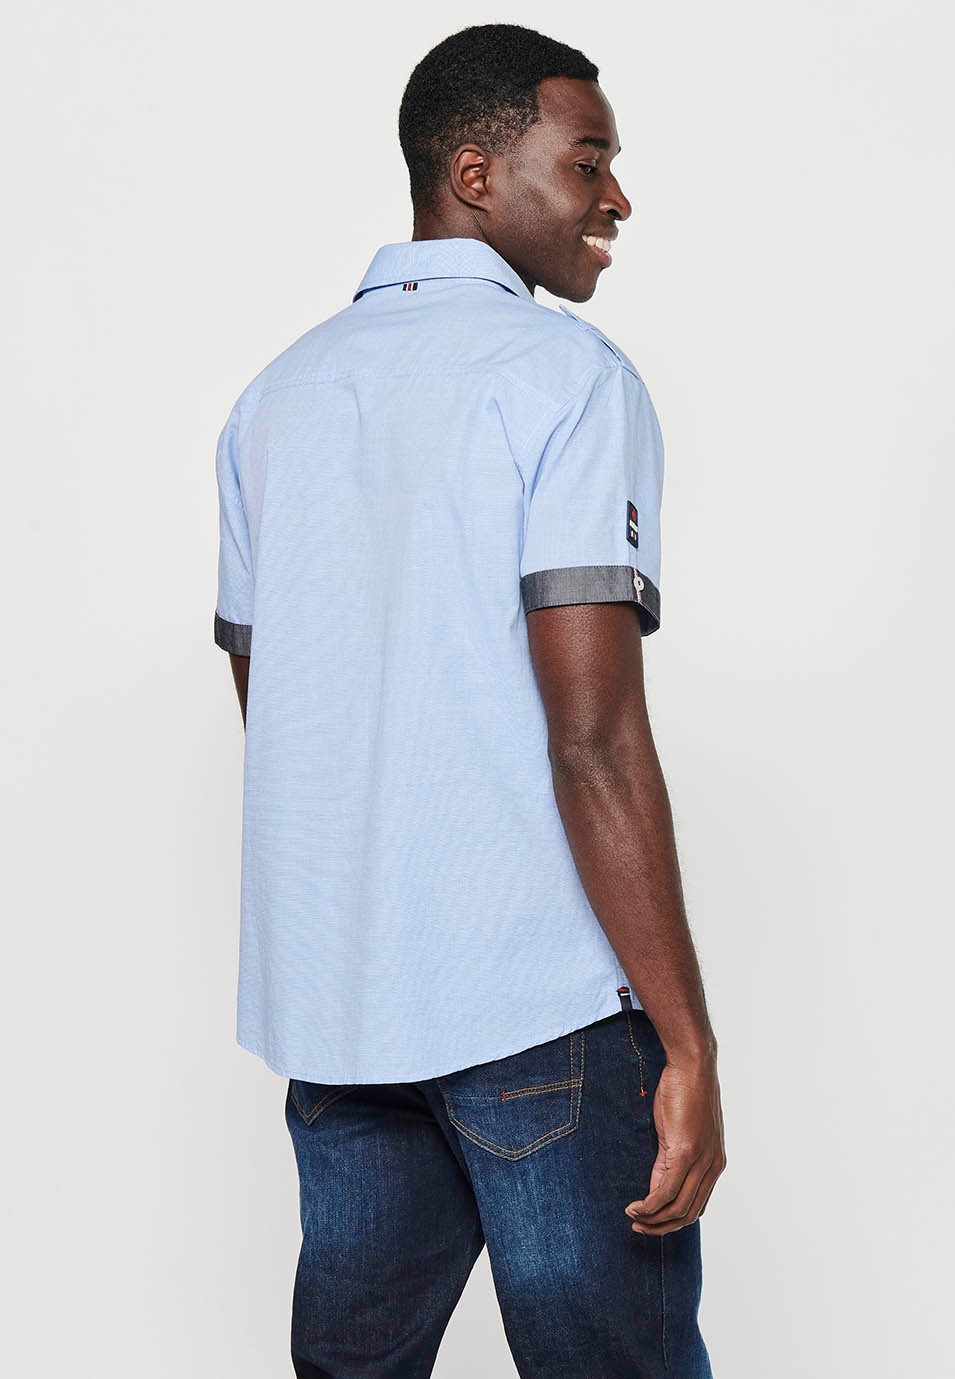 Cotton shirt, short sleeve, shoulder details, blue color for men 5